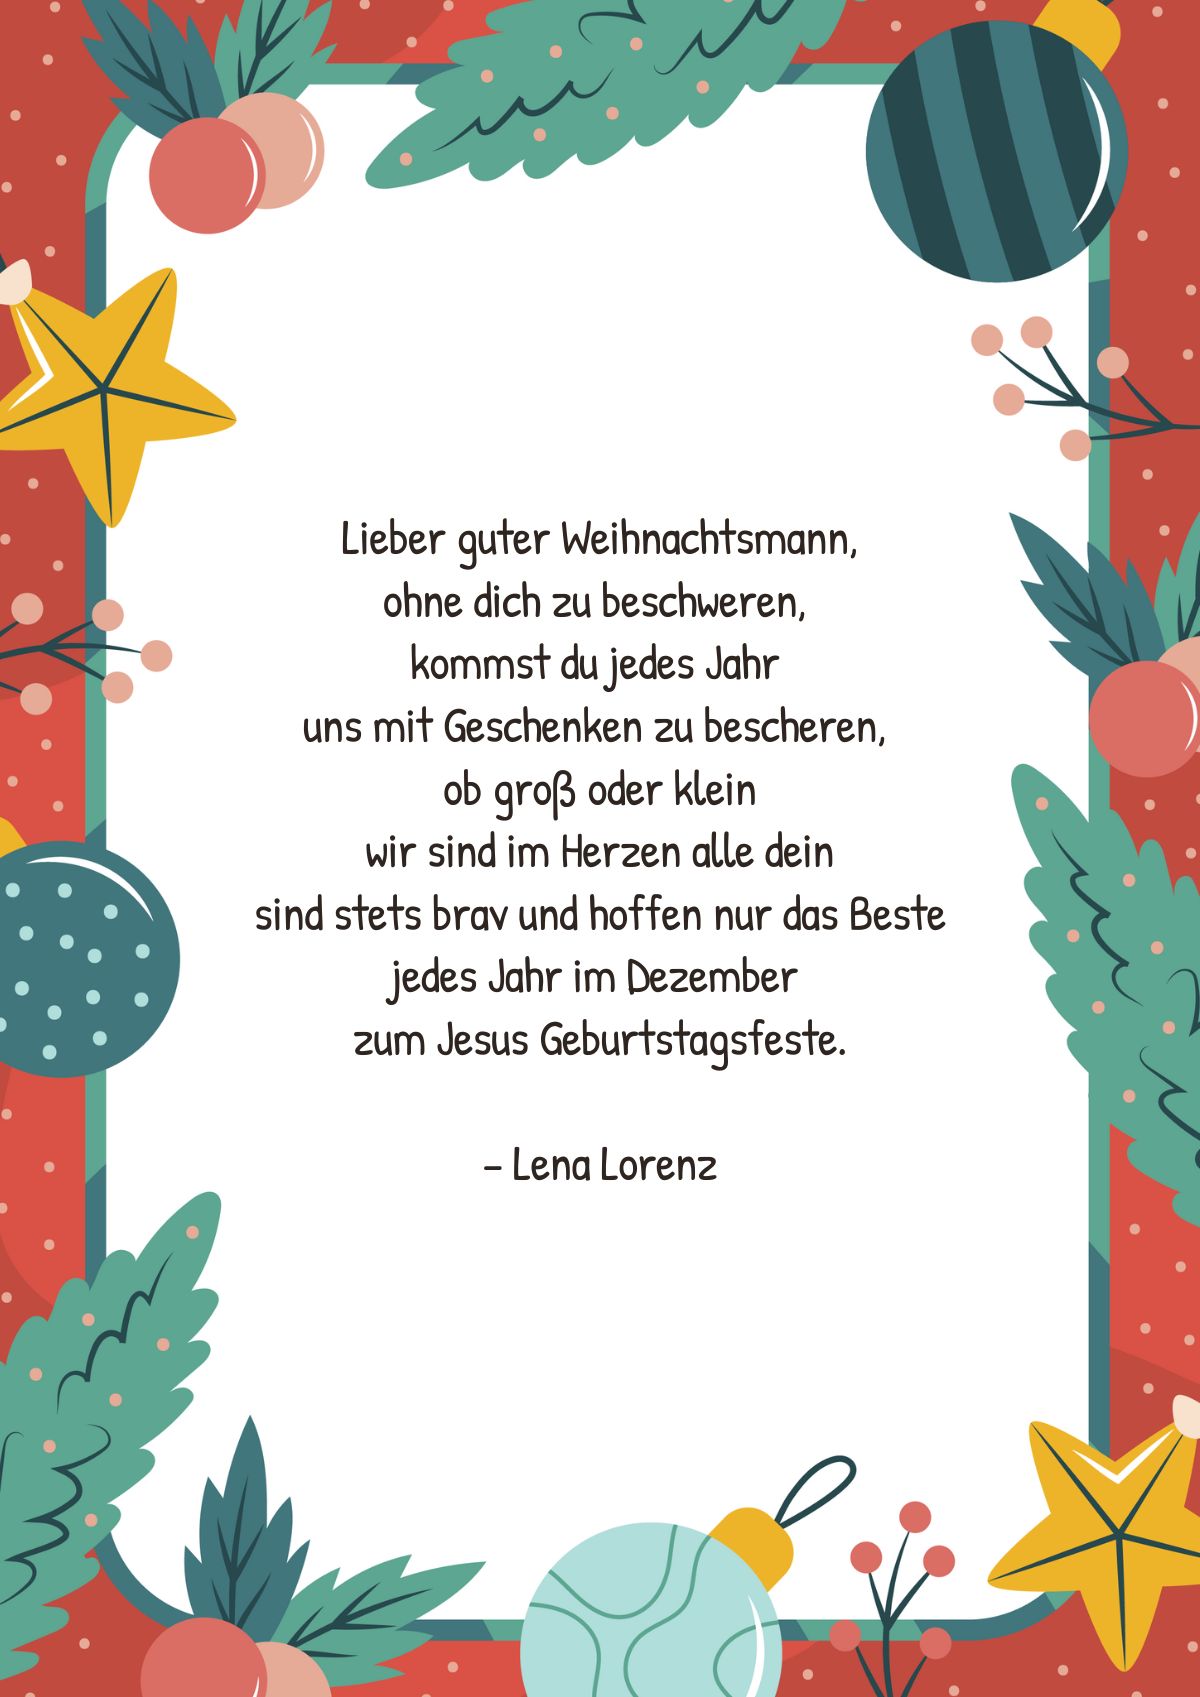 Weihnachtsgedicht von Lena Lorenz